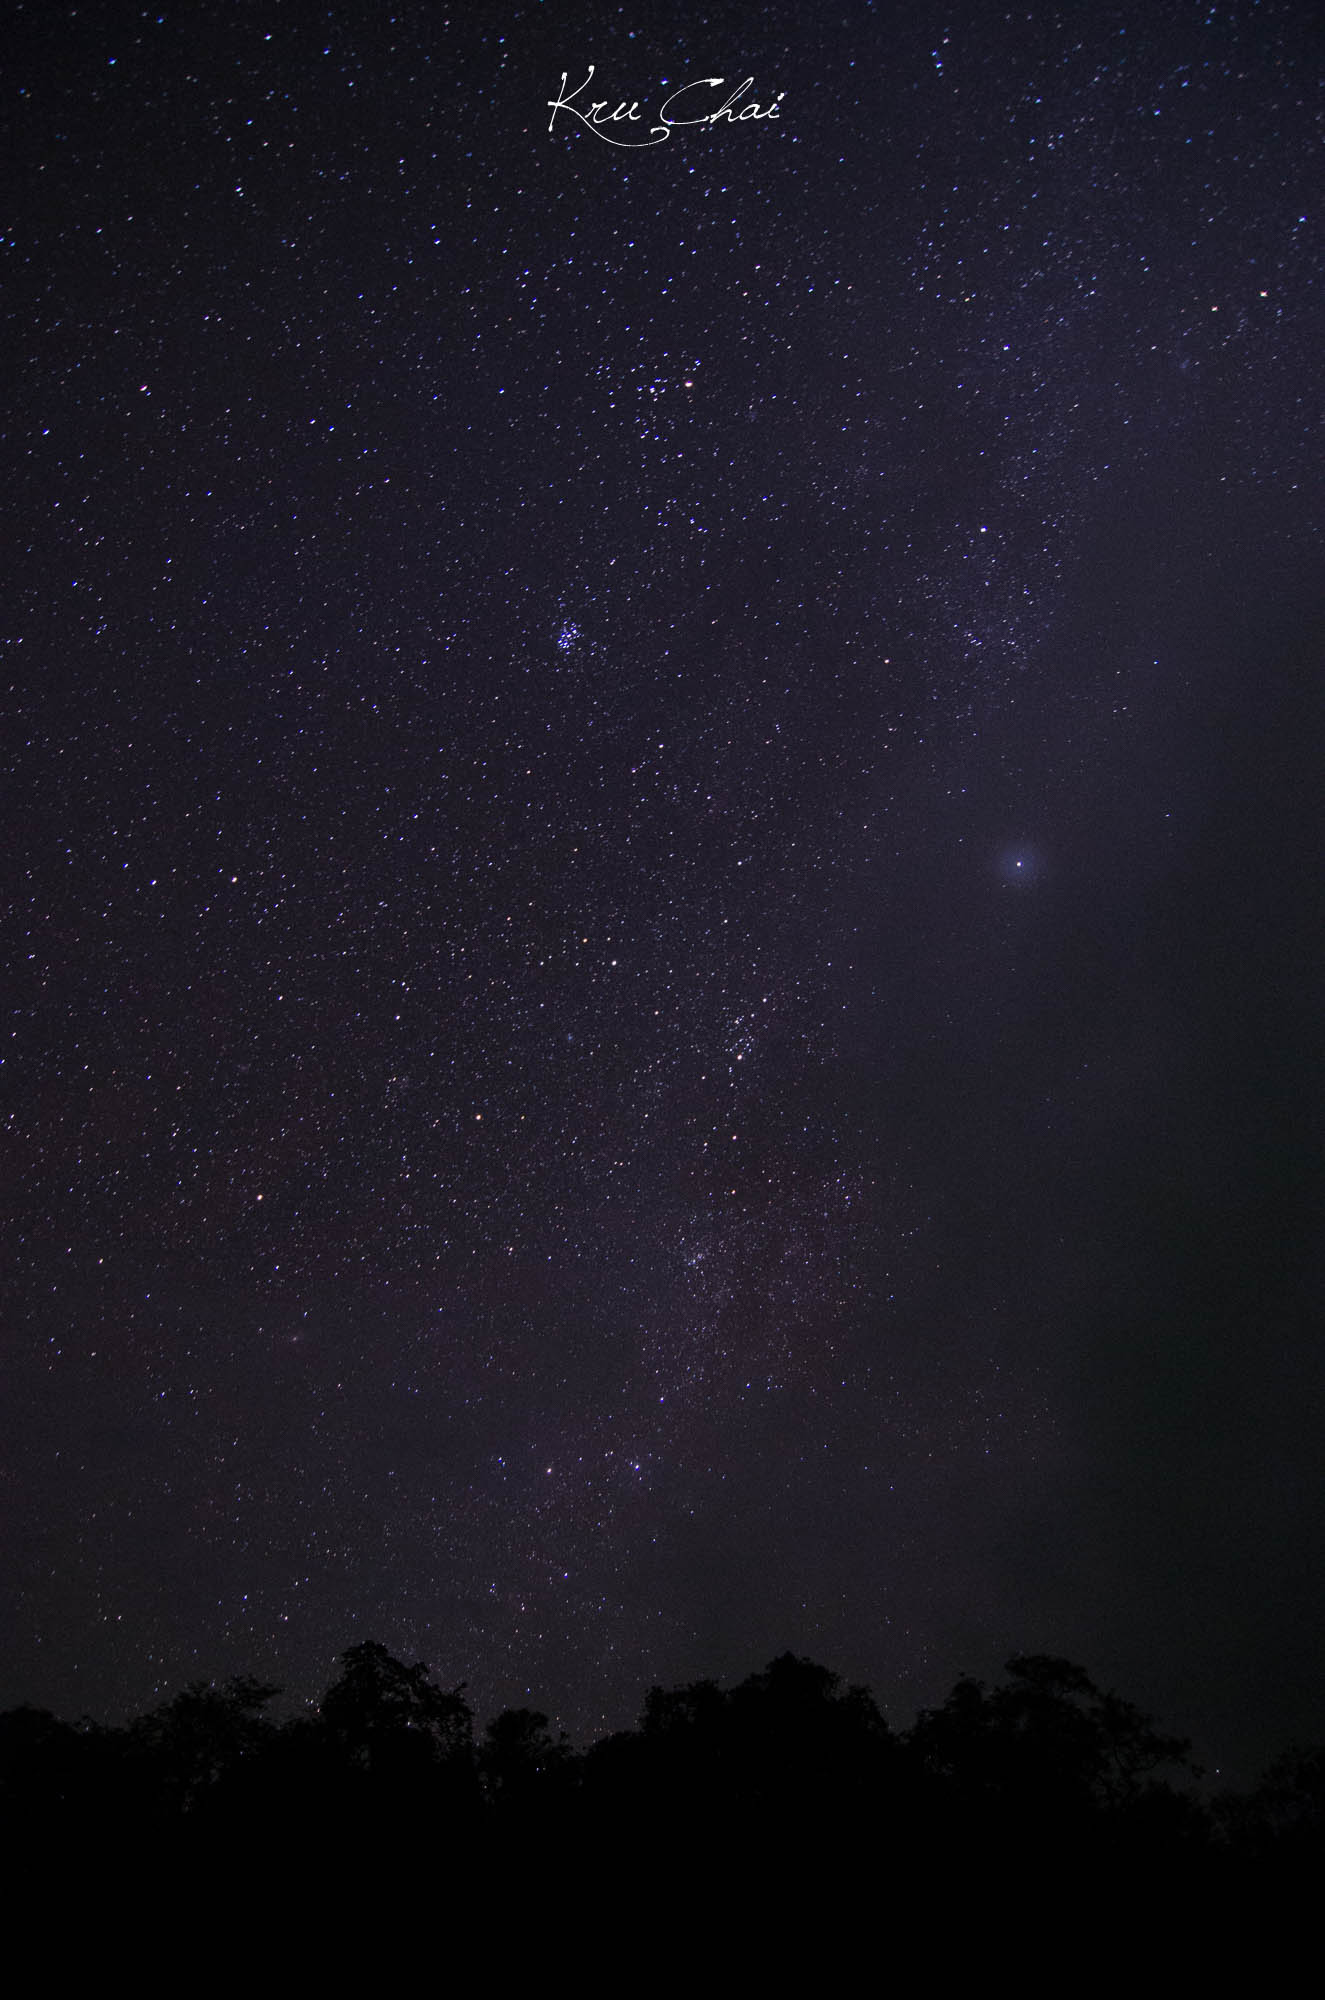 ขอลงรูปกล้องผมอีกนิดครับ
เช้าวันที่ 2 ของทริป ผมสะดุ้งตื่นตั้งแต่ตี 4 เห็นดาวเต็มท้องฟ้า ต่างจากท้อ